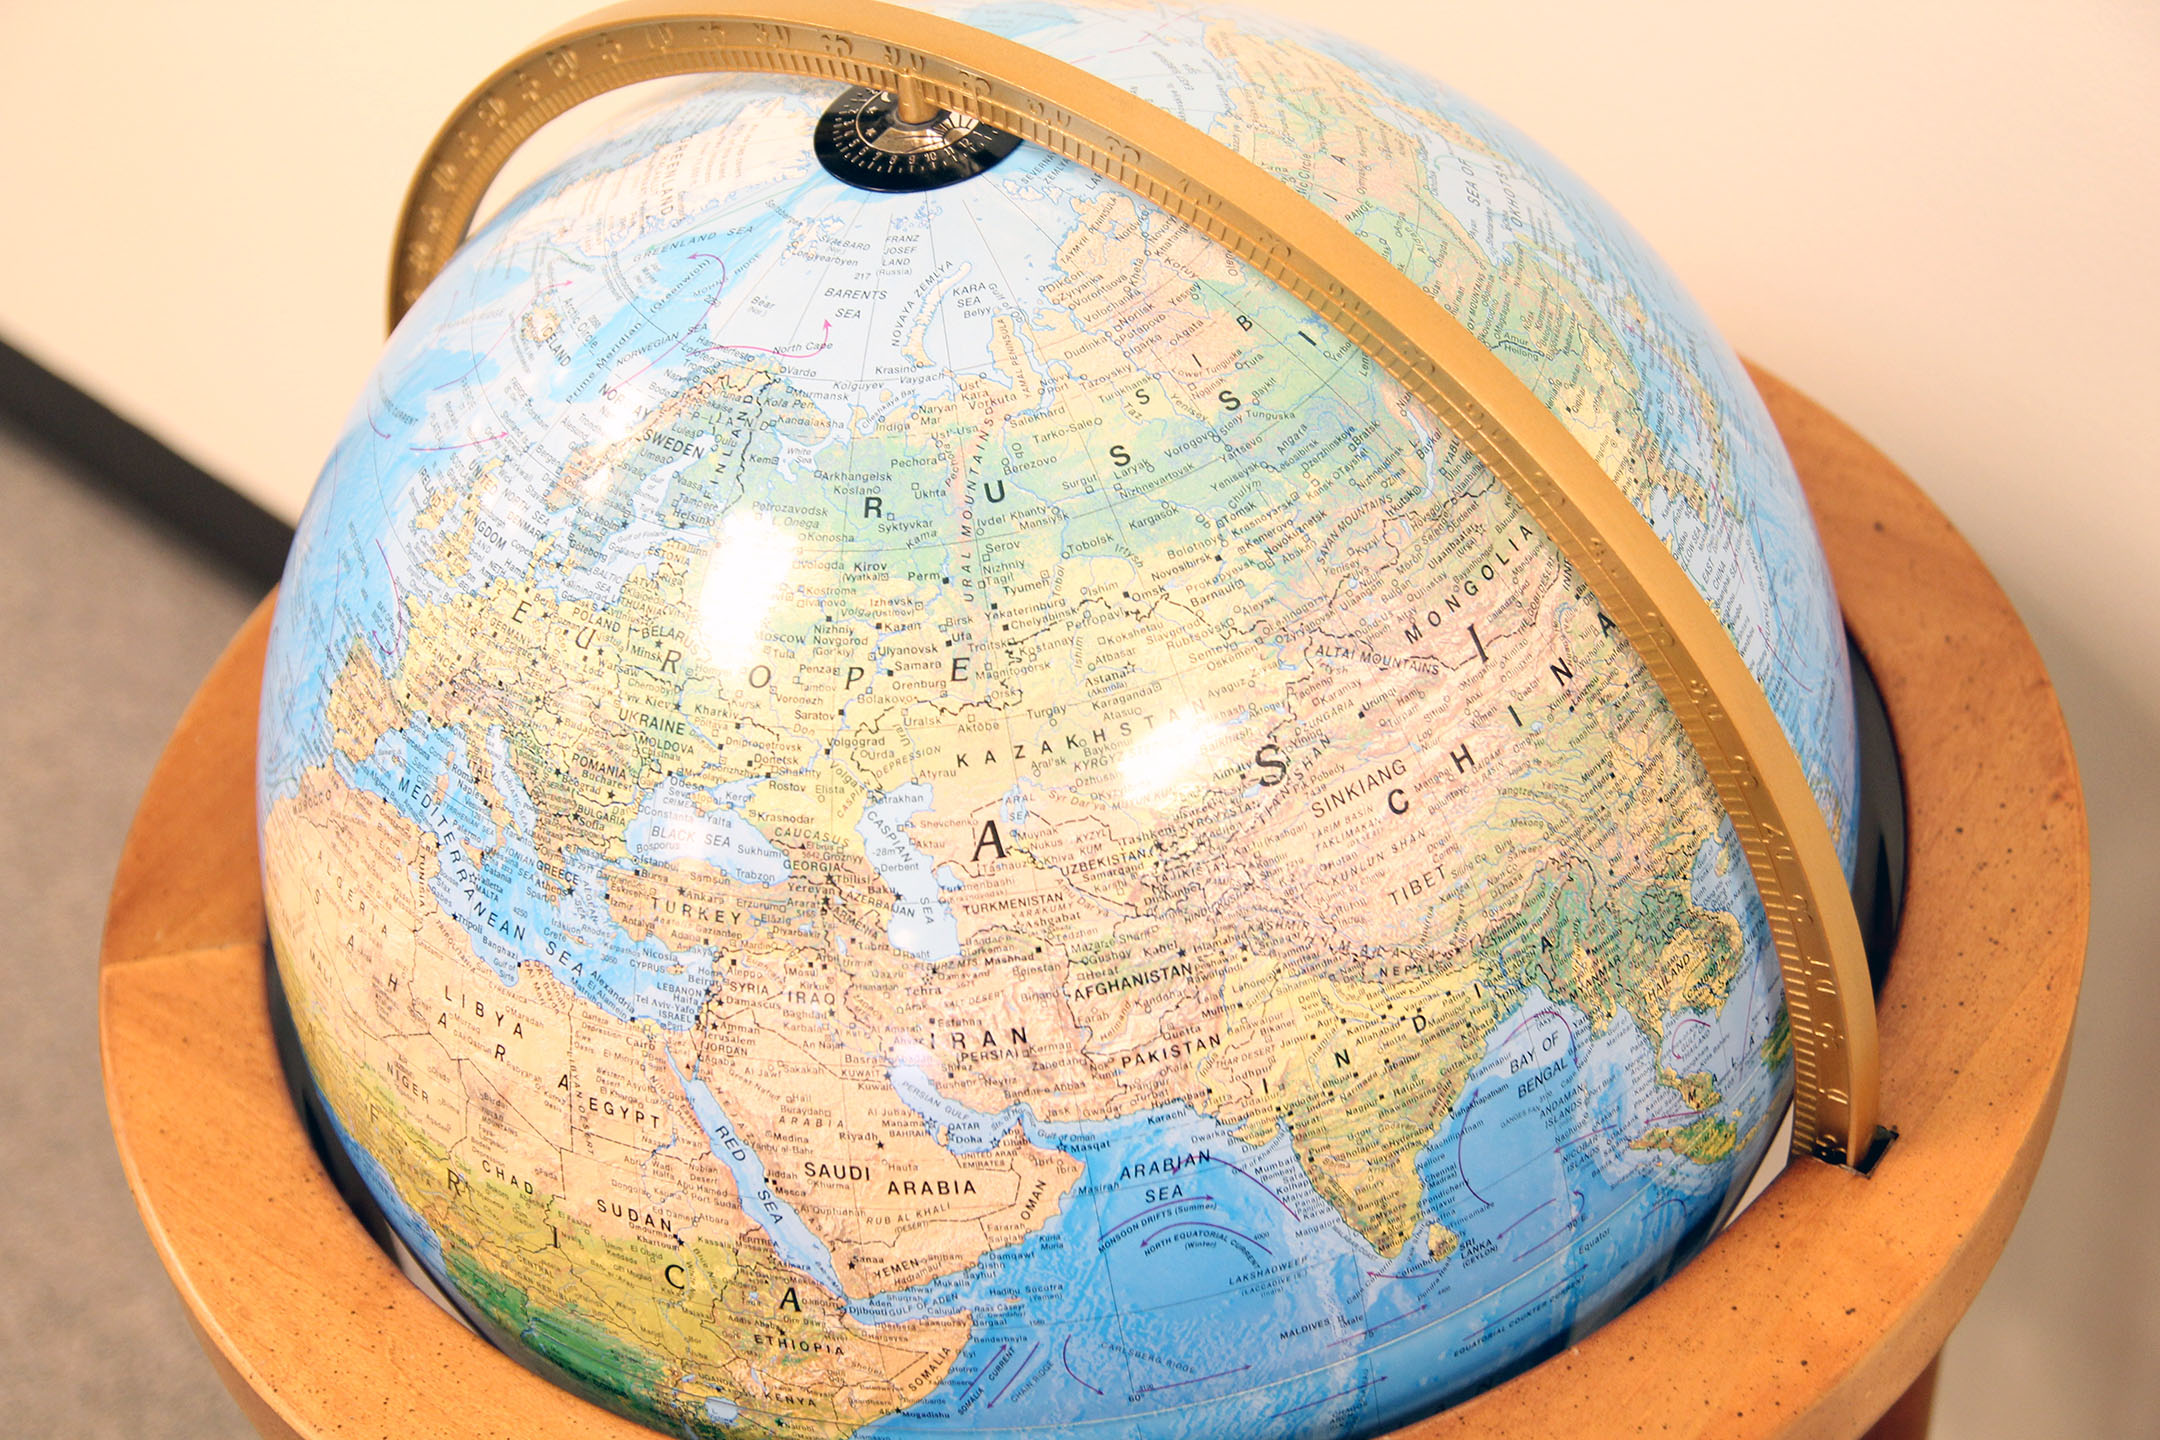 Image of a world globe